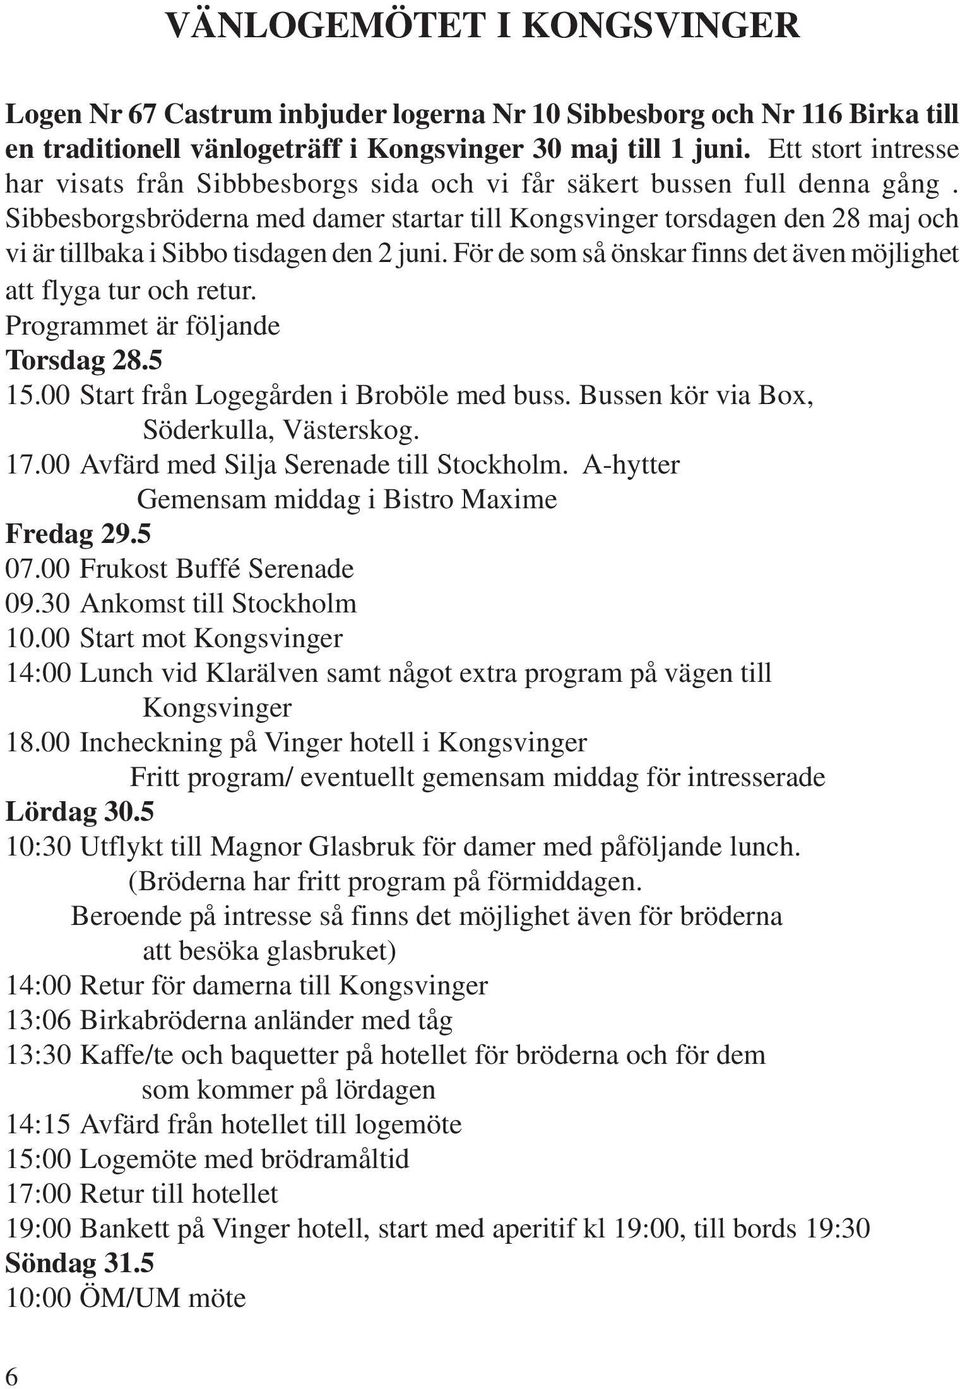 Sibbesborgsbröderna med damer startar till Kongsvinger torsdagen den 28 maj och vi är tillbaka i Sibbo tisdagen den 2 juni. För de som så önskar finns det även möjlighet att flyga tur och retur.